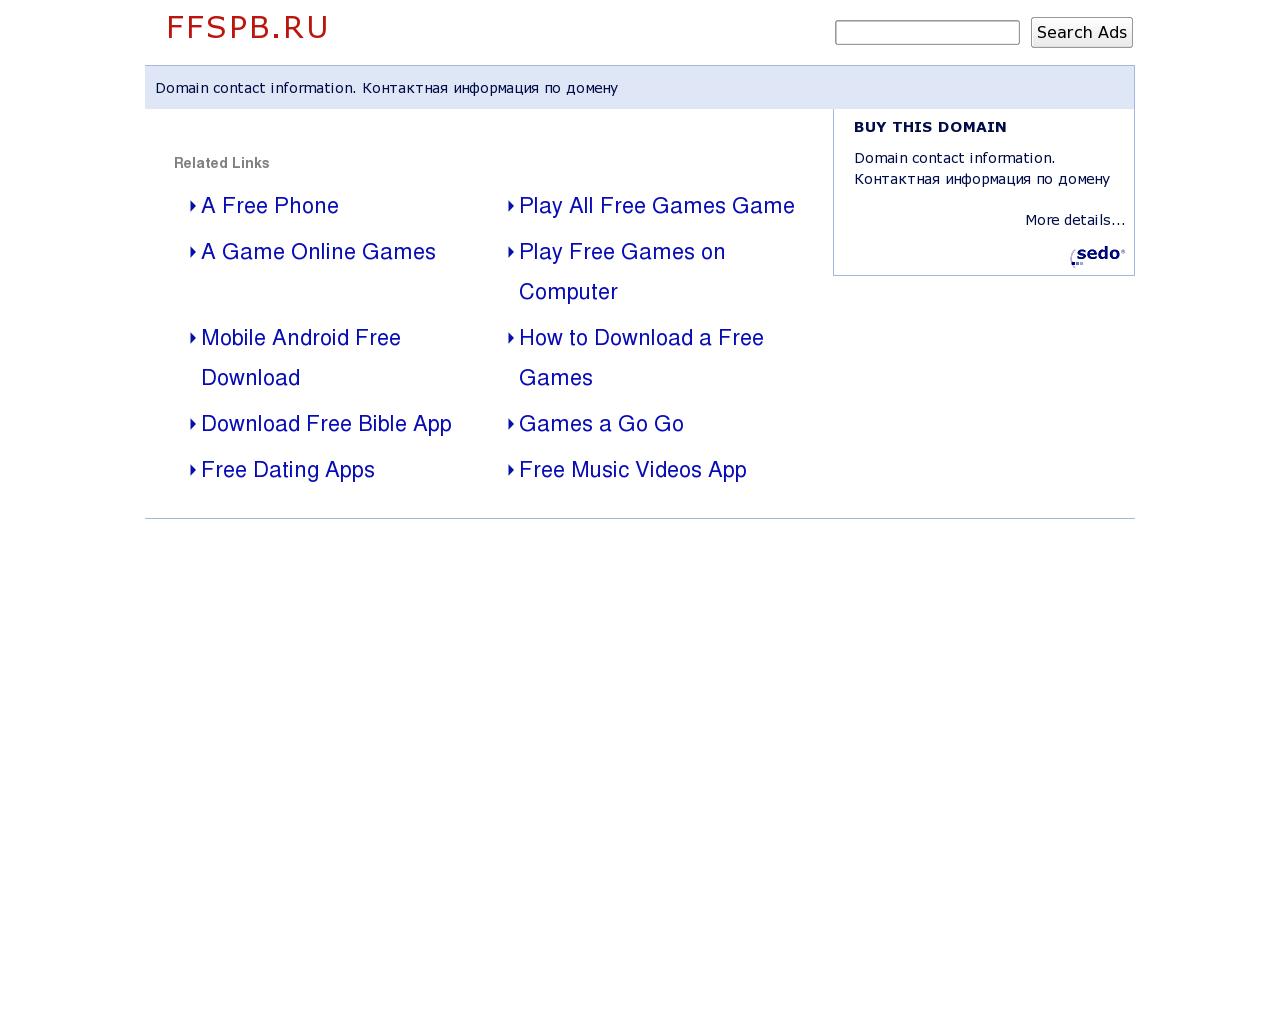 Изображение сайта ffspb.ru в разрешении 1280x1024